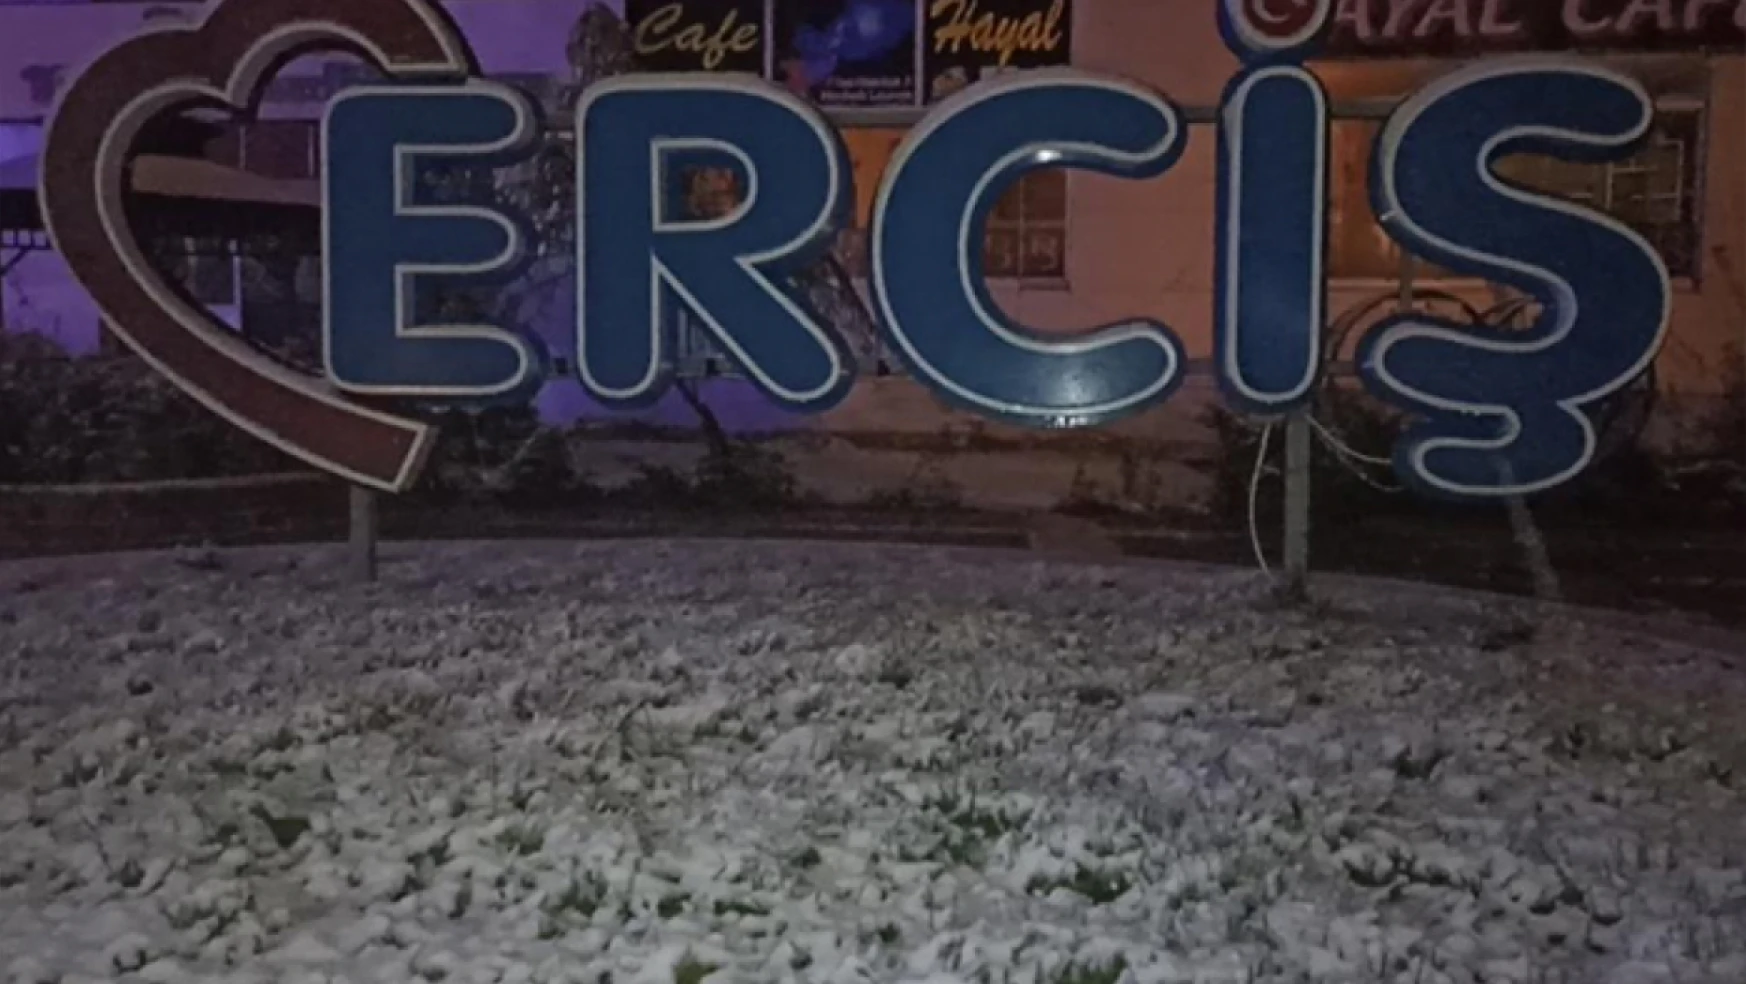 Erciş'te kar yağışı